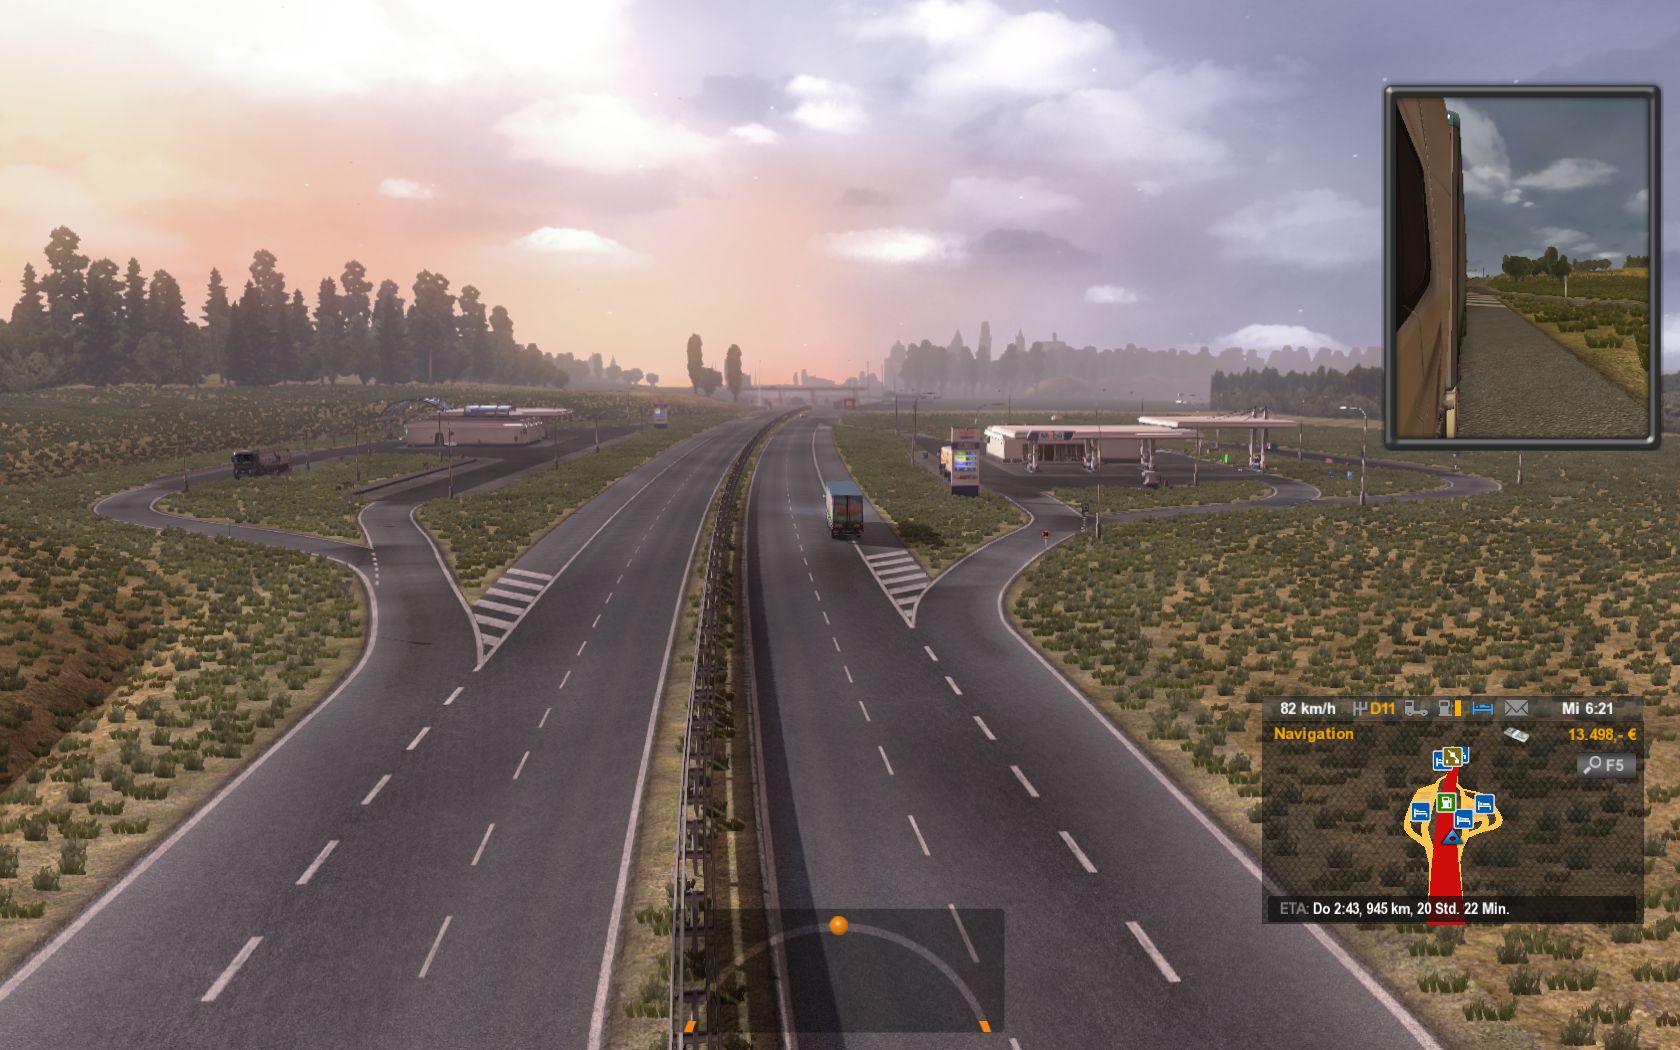 euro truck simulator 3 download free full version download